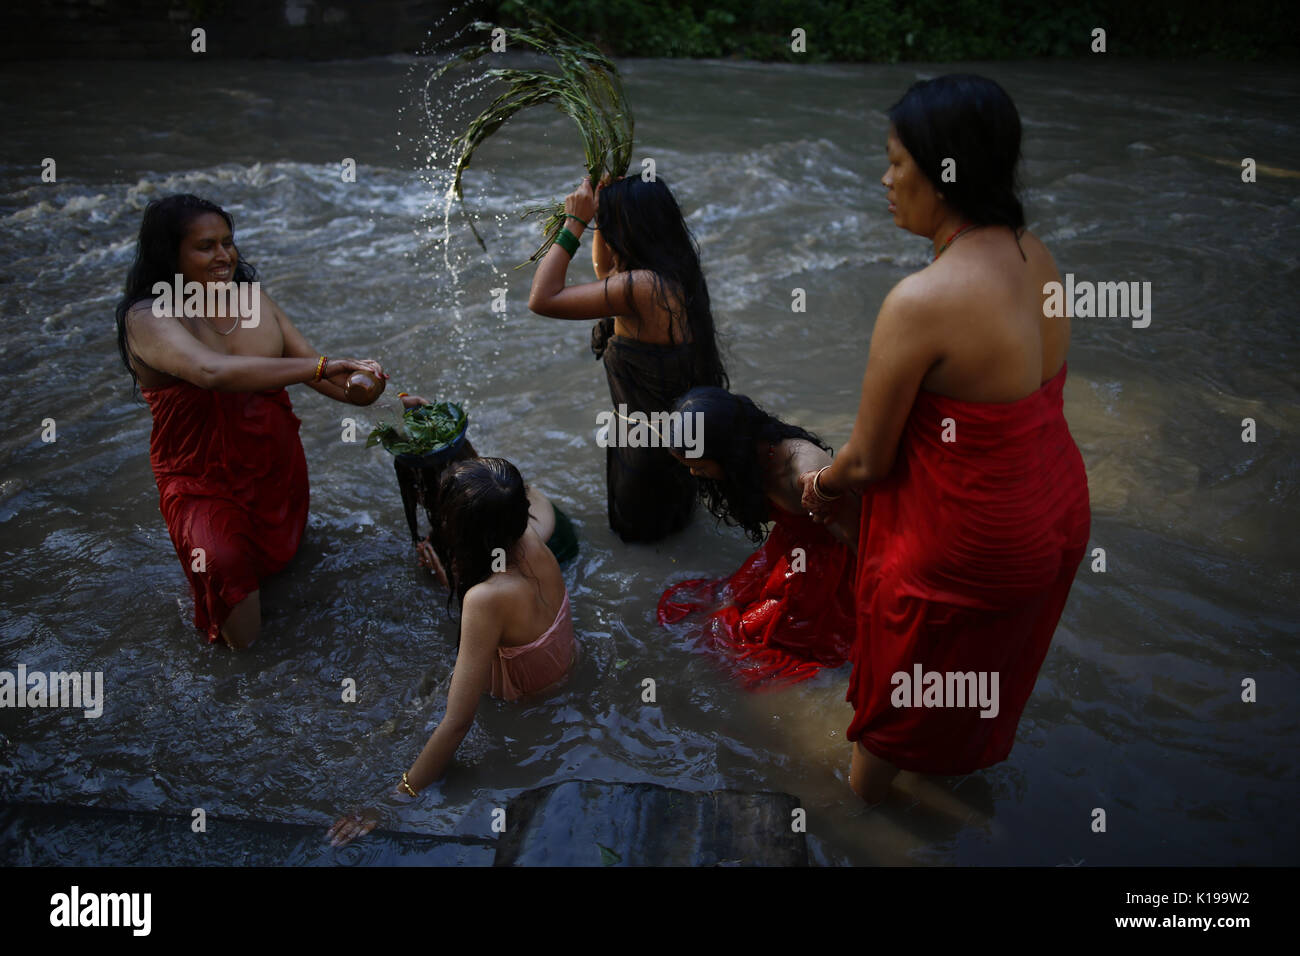 26 août 2017 - Katmandou, Népal Népalais - femmes Hindu effectuer un bain rituel au cours de Rishi Panchami festival sur les rives du fleuve Bagmati à Katmandou, Népal le Samedi, 26 août, 2017. Rishi Panchami est observé pour marquer la fin de trois jours de festival Teej lorsque les femmes adorent Sapta Rishi (Sept Saints) le dernier jour en nettoyant leurs corps avec 365 tiges d'Apamarga, une plante médicale, prenez bath avec de la bouse de vache et de sol prélevés dans des lieux sacrés et des cendres dans la croyance qu'ils soient bénis et pardonné de tous les péchés qu'ils étaient soupçonnés d'avoir commis pendant le cycle menstruel et laver Banque D'Images